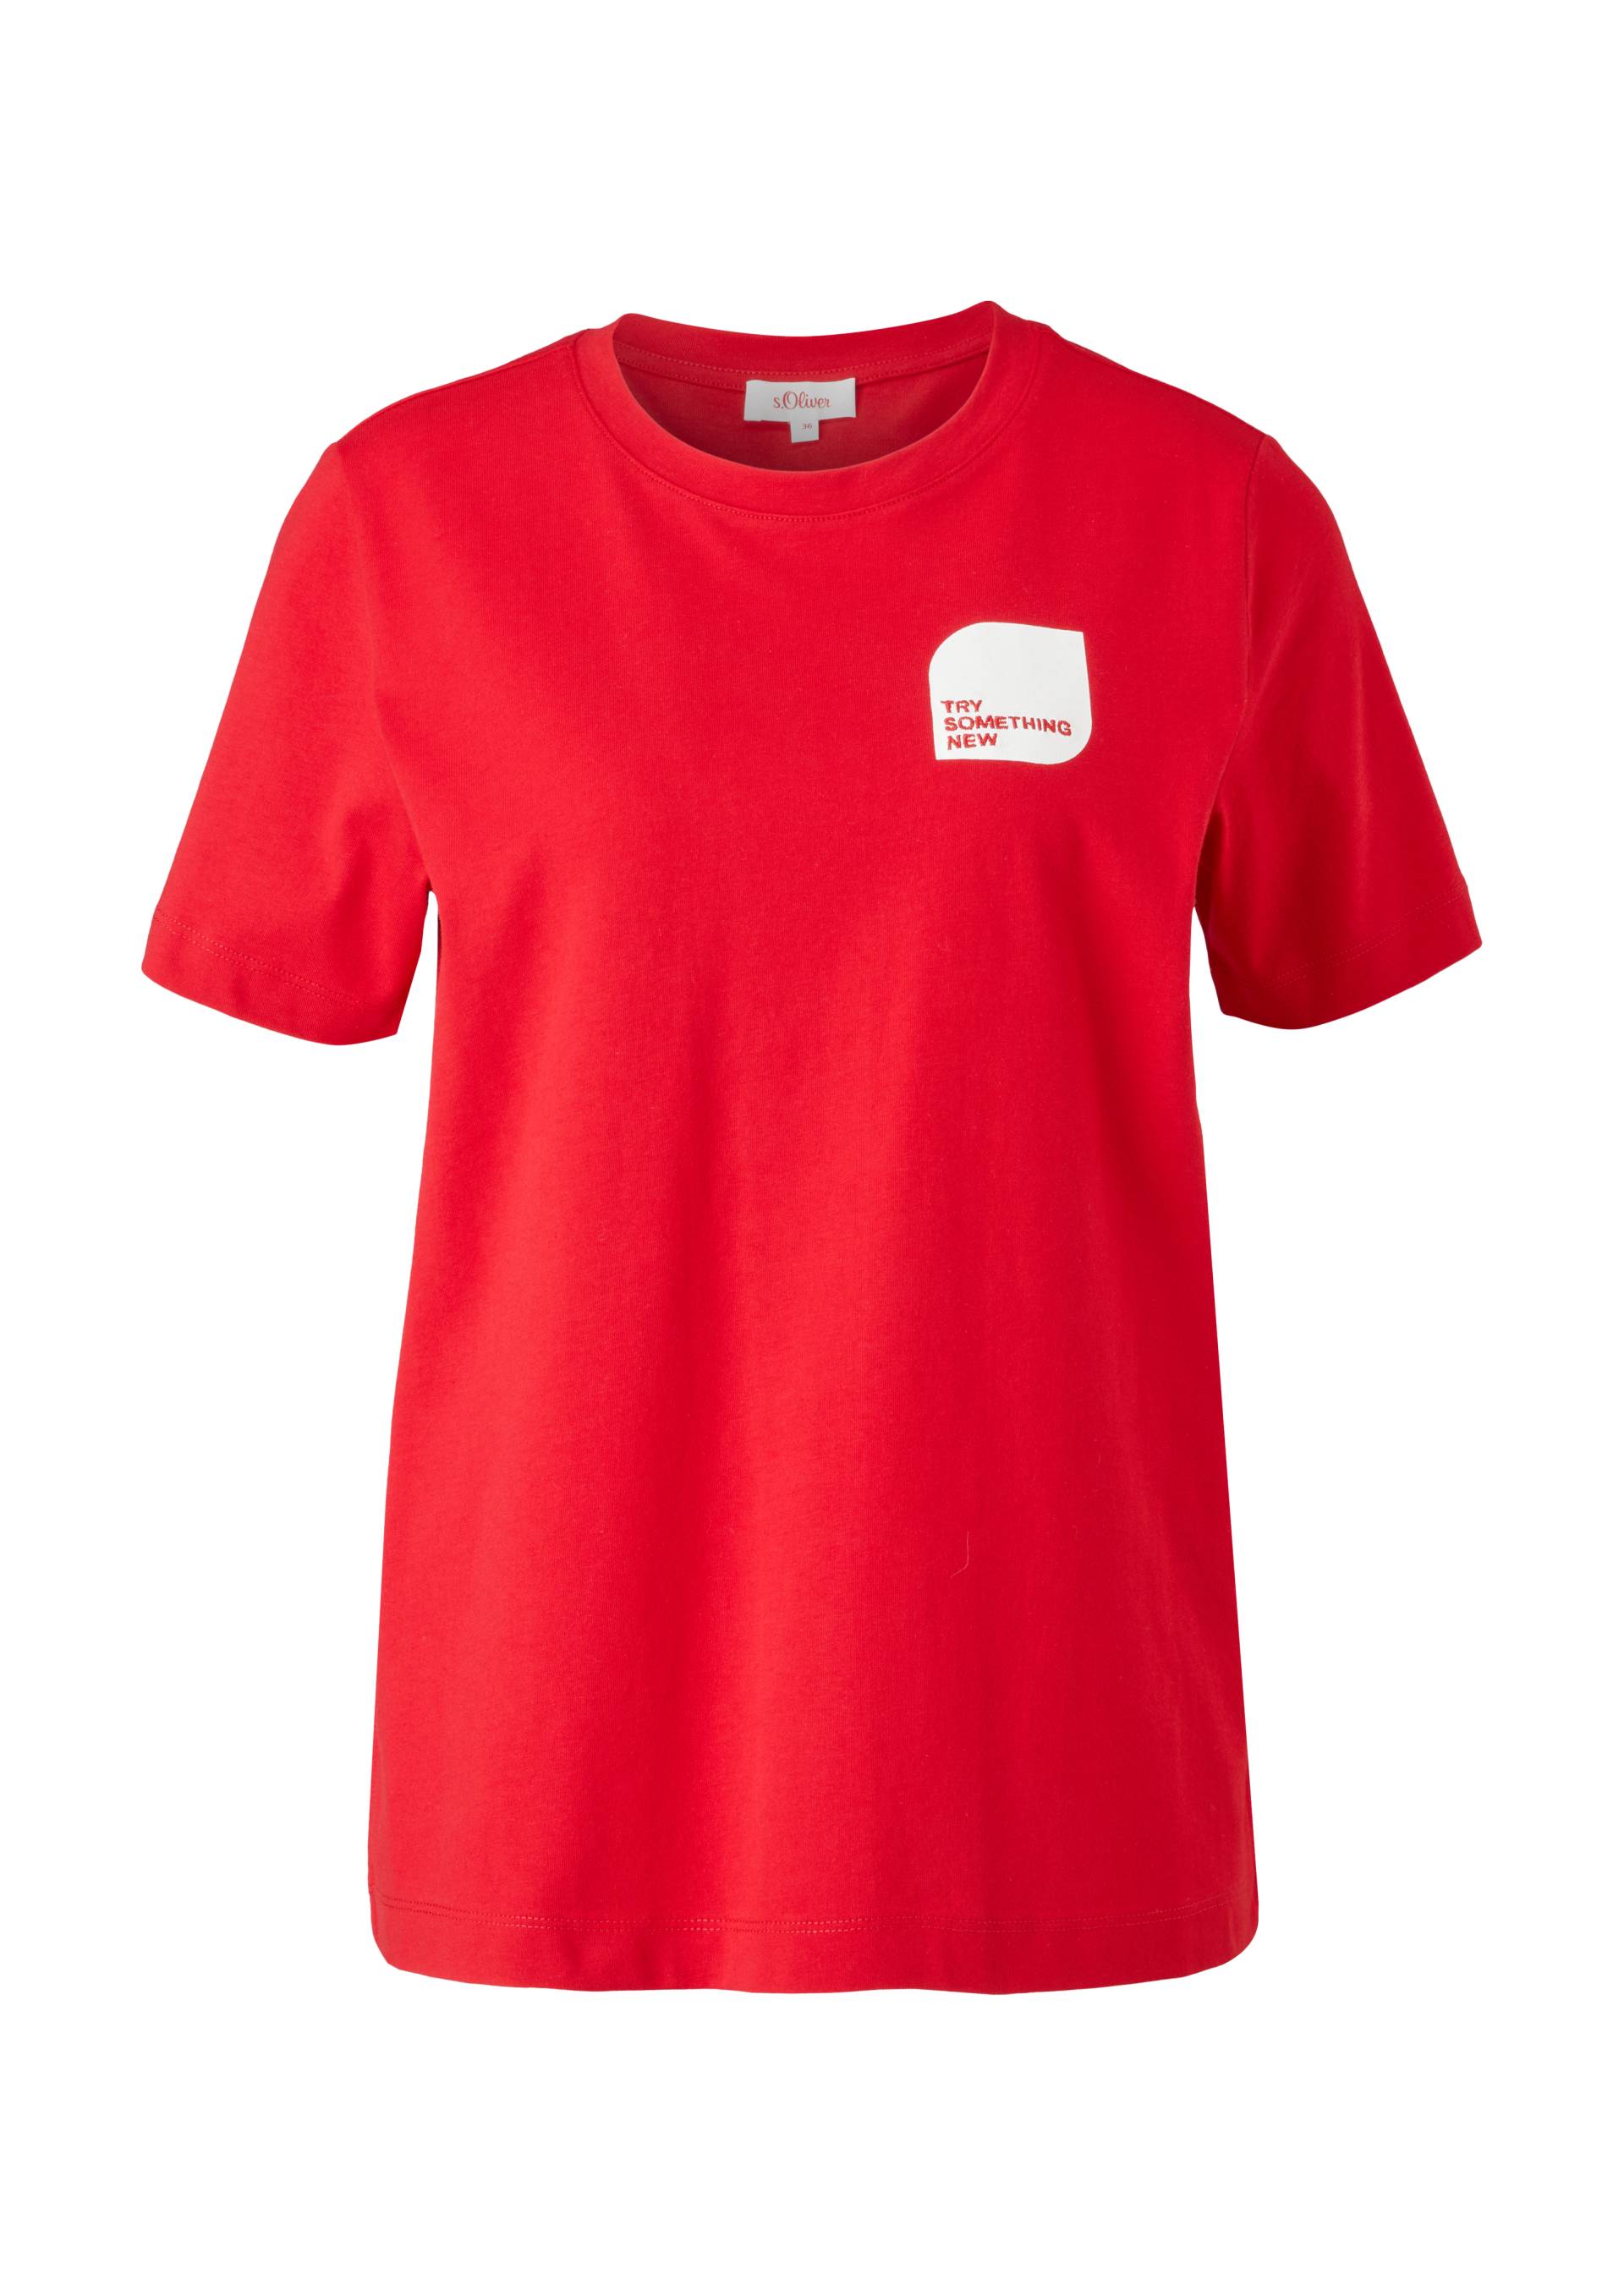 s.Oliver - Lockeres Jerseyshirt mit Print, Damen, rot von s.Oliver